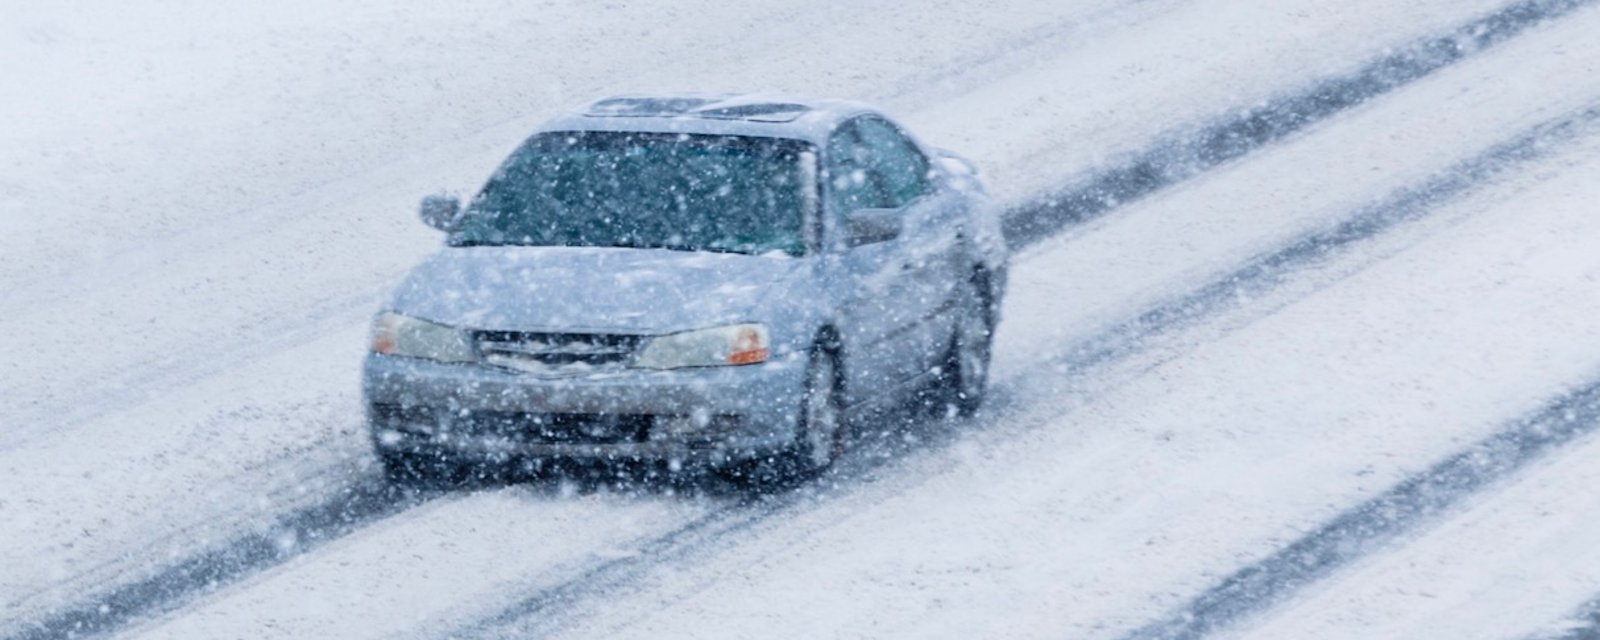 La neige va compliquer le retour à la maison pour des milliers de Québécois cet après-midi